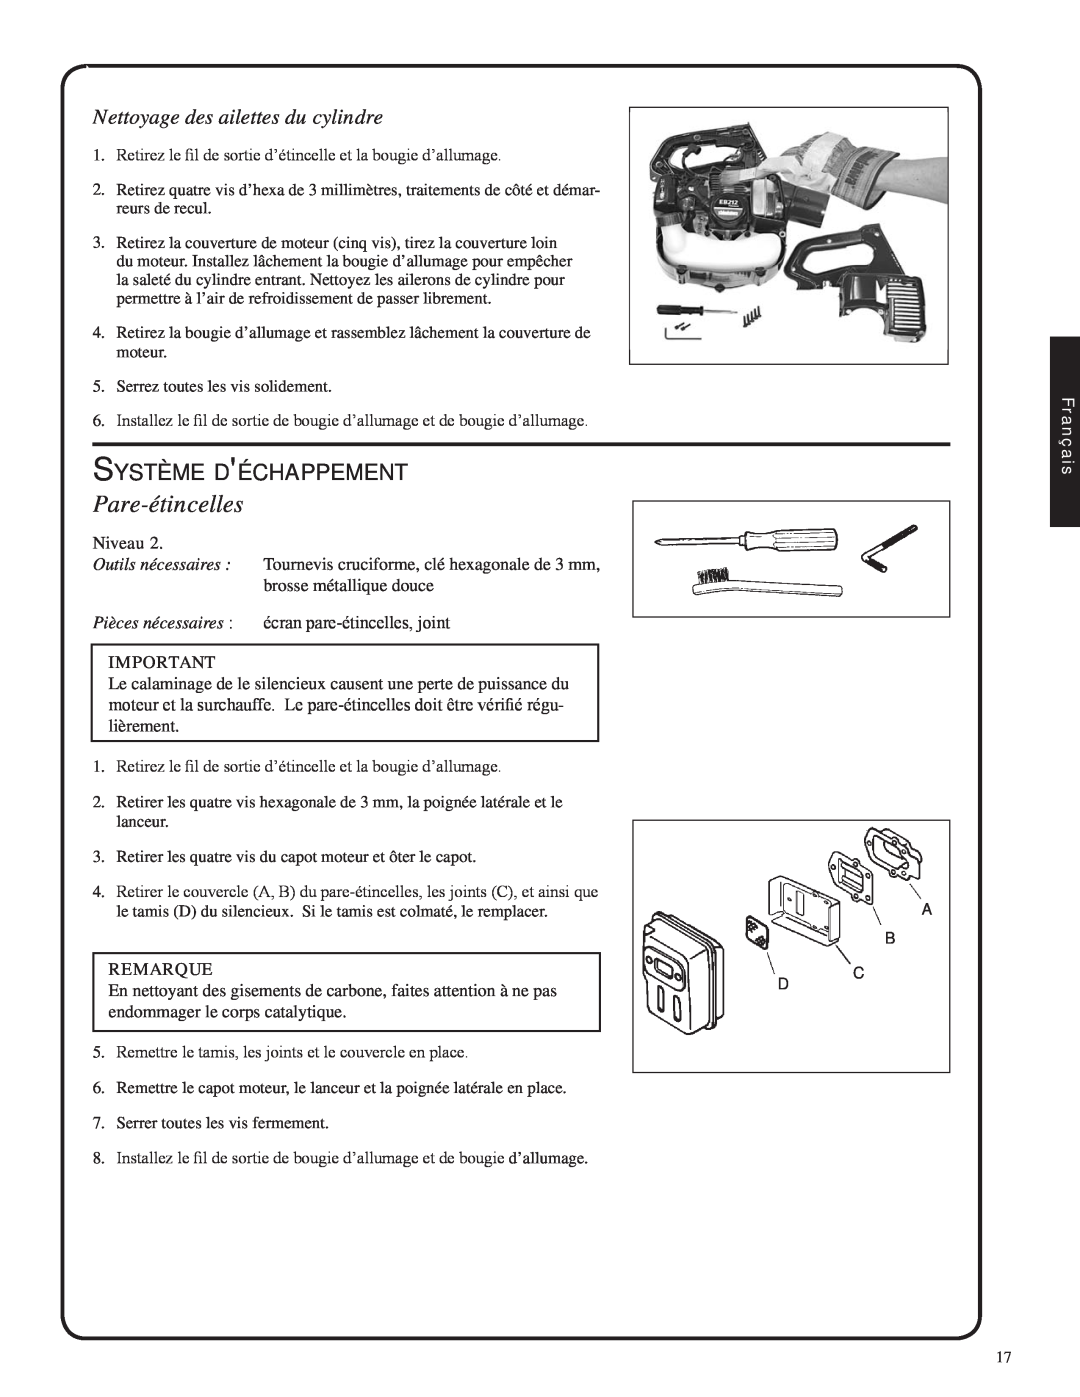 Shindaiwa 82051, EB212 manual Pare-étincelles, Système déchappement, Nettoyage des ailettes du cylindre 